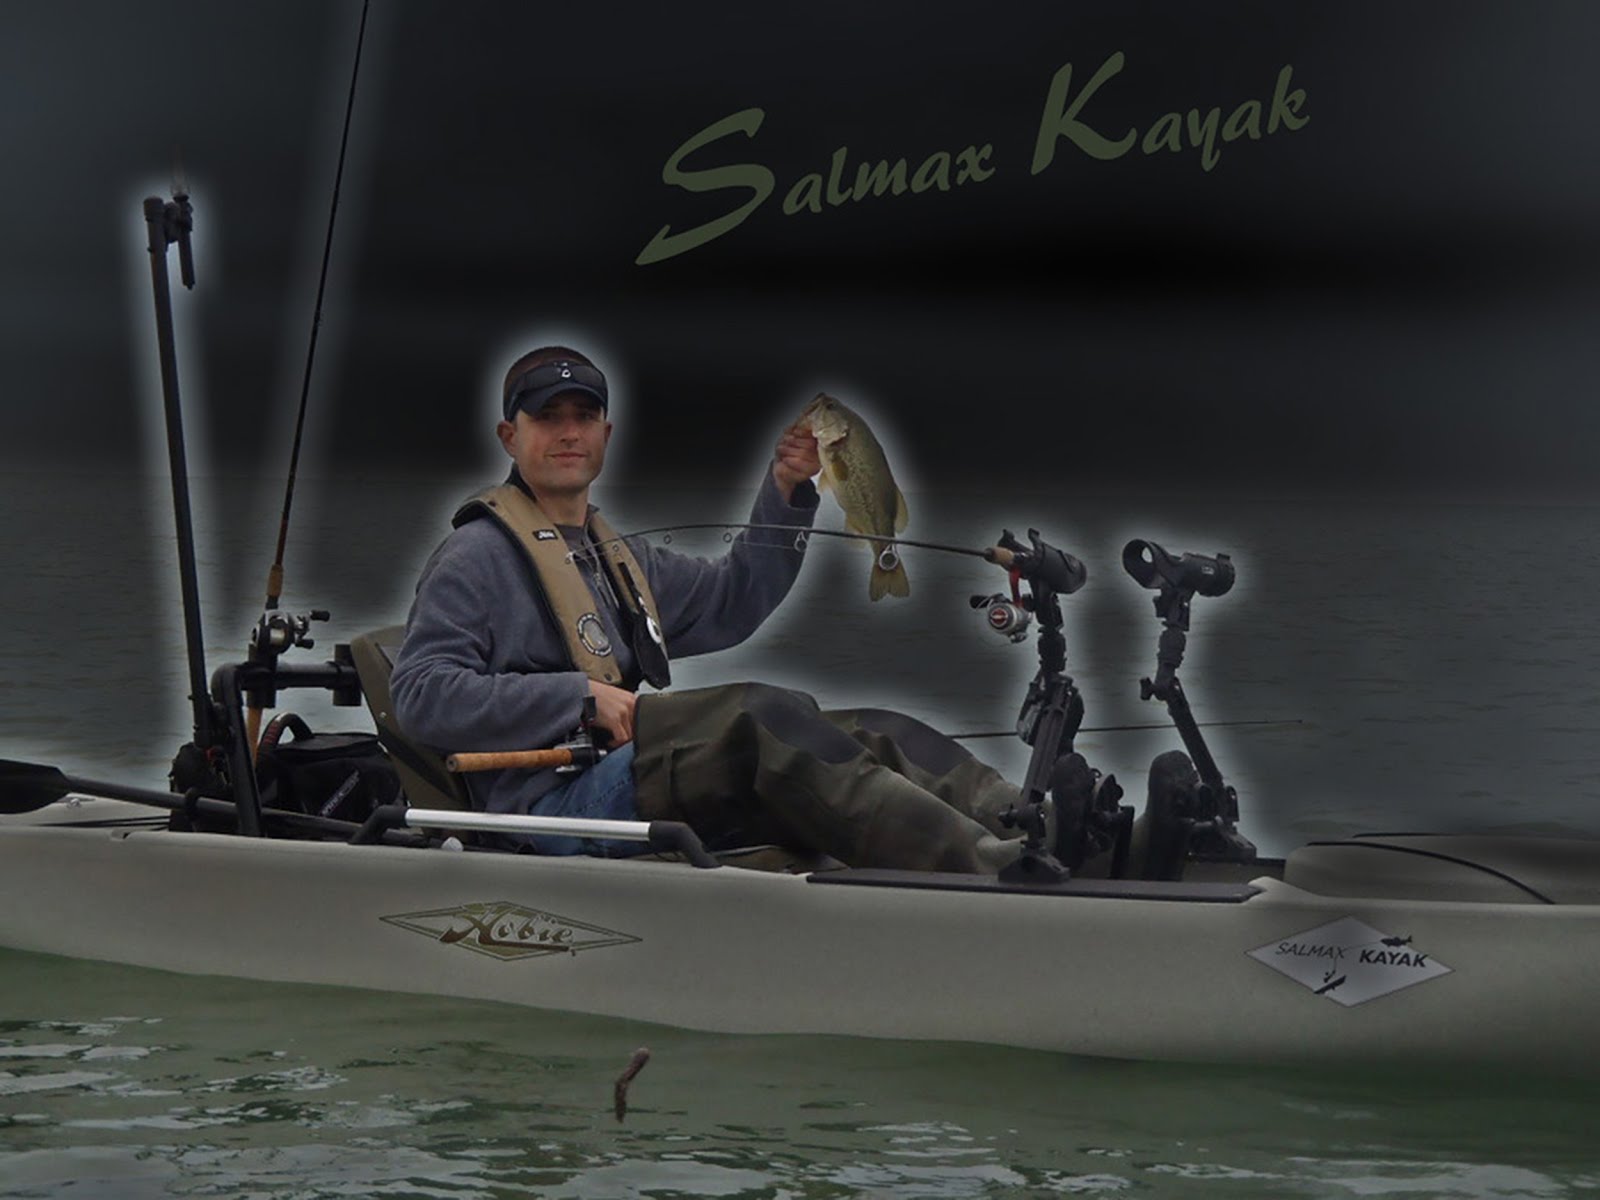 Salmax Kayak